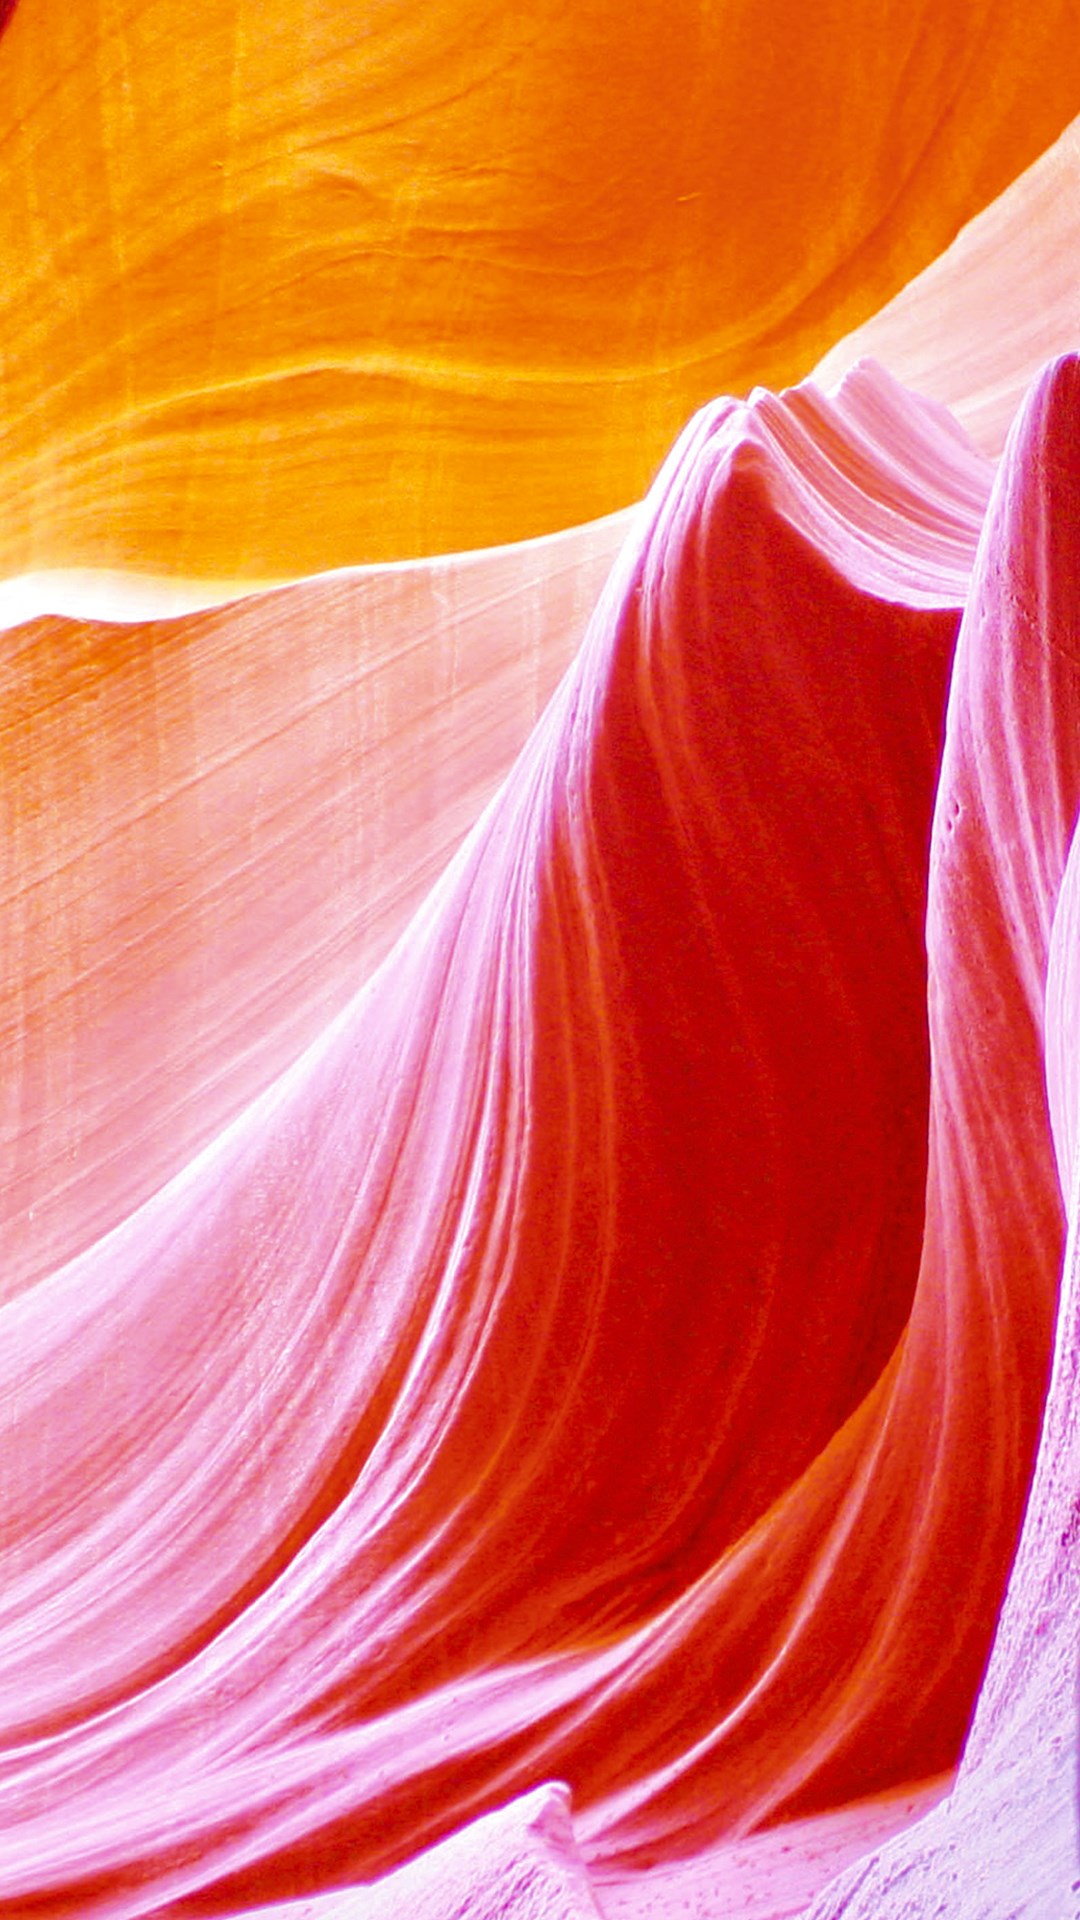 안드로이드 폰 무료 다운로드를위한 3d 배경 화면,주황색,빨간,분홍,아크릴 페인트,복숭아